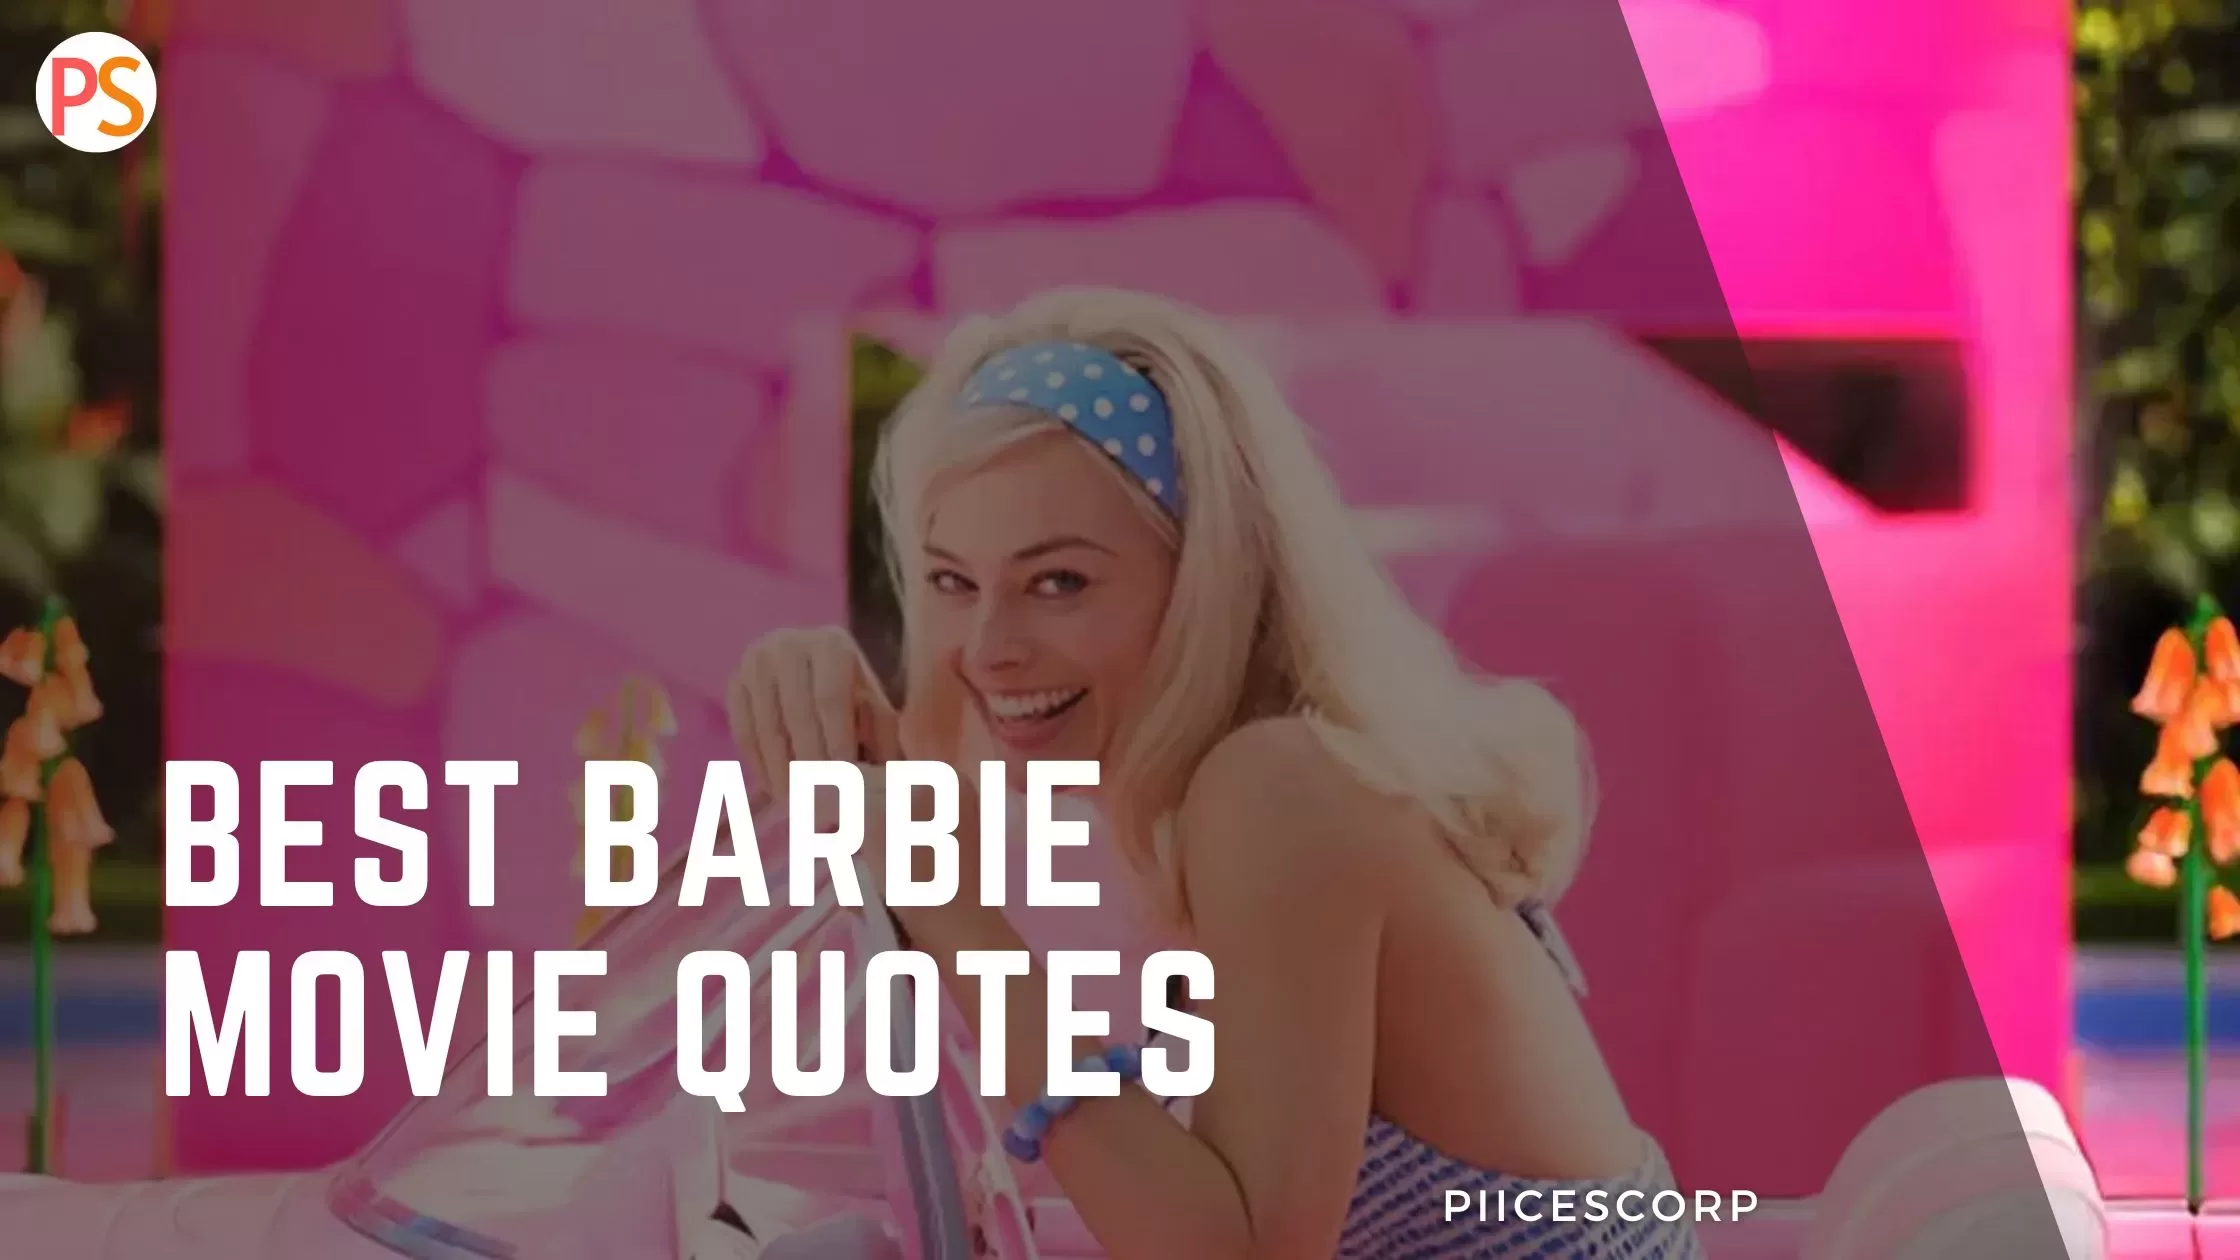 Best Barbie movie quotes